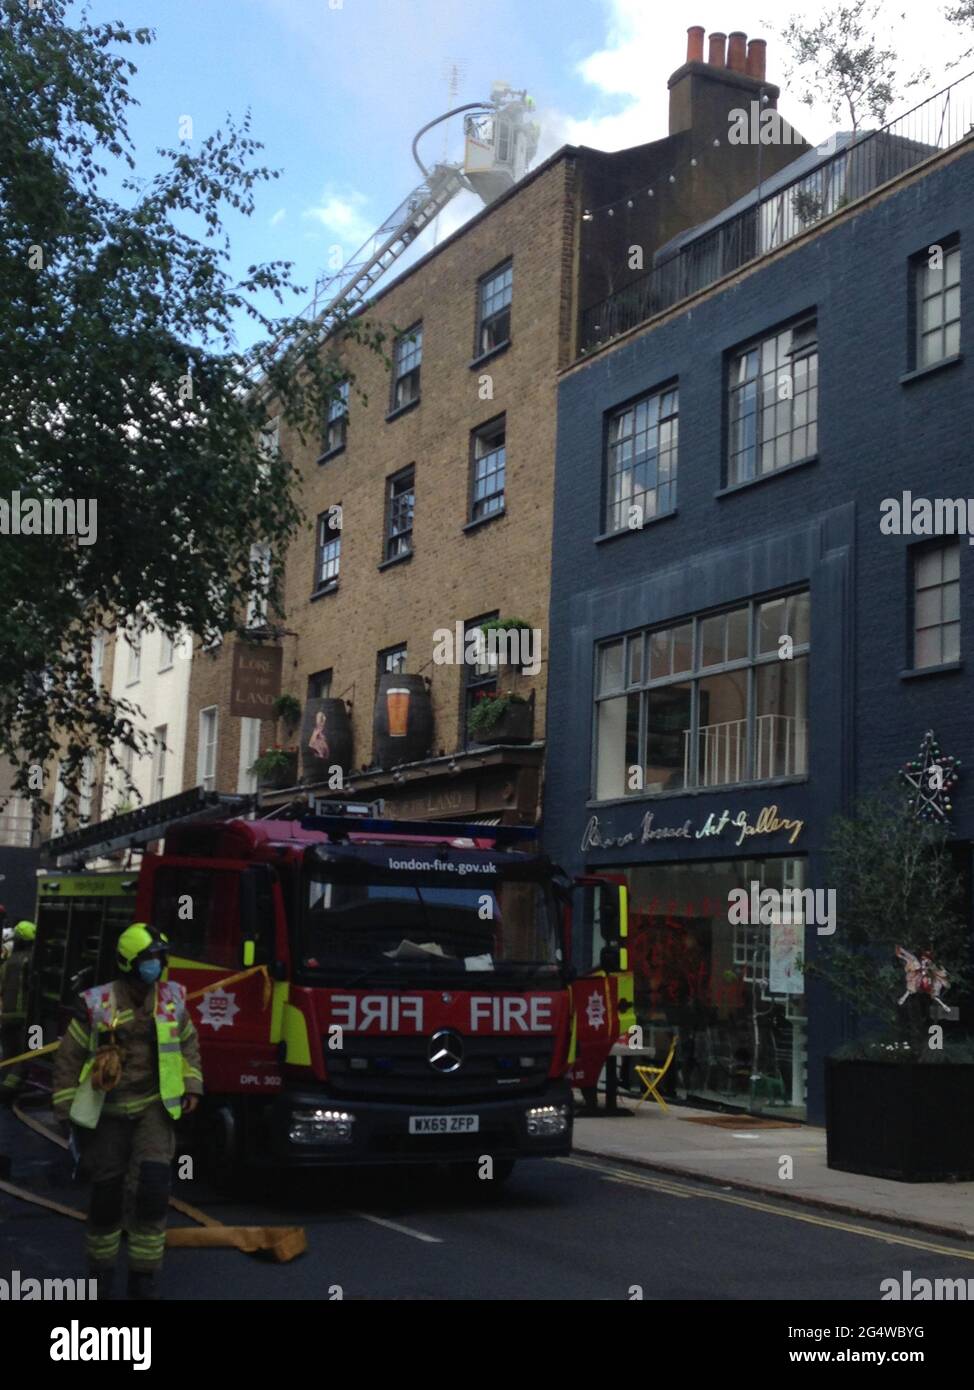 Londra, Regno Unito – 23 giugno 2021: I membri della Brigata dei vigili del fuoco di Londra affrontano un incendio al pub Lore of the Land nel distretto Fitzrovia di Camden, Londra Foto Stock